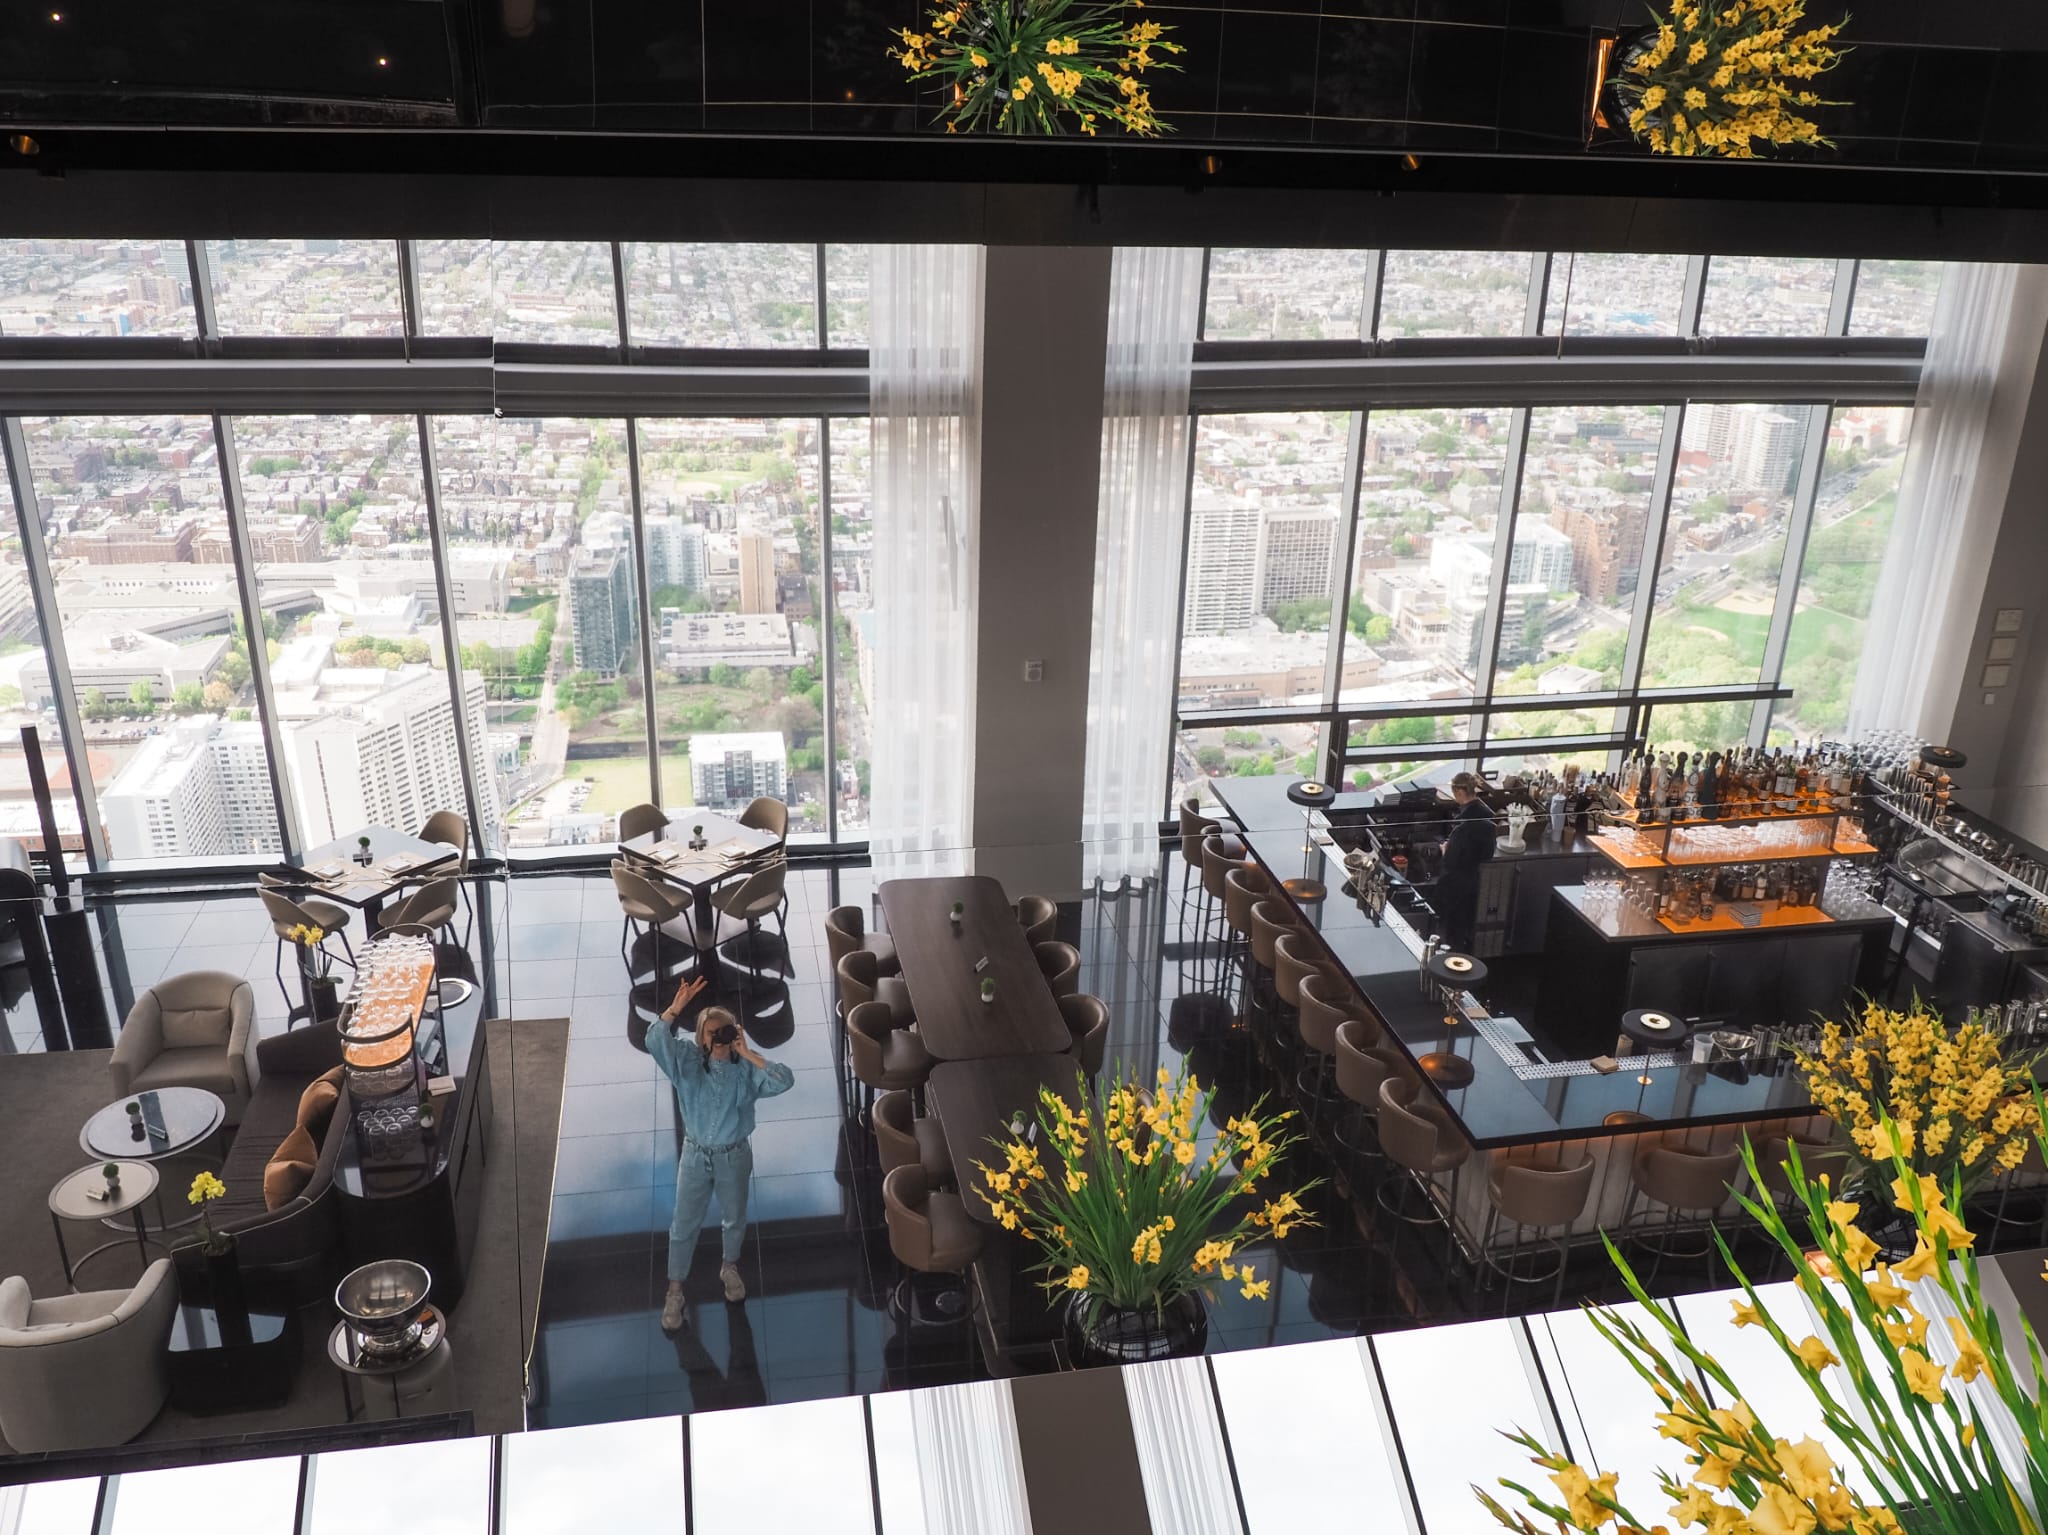 Bezoek Skyhigh op de 60e verdieping van het Four Seasons hotel voor het beste uitzicht op Philadelphia